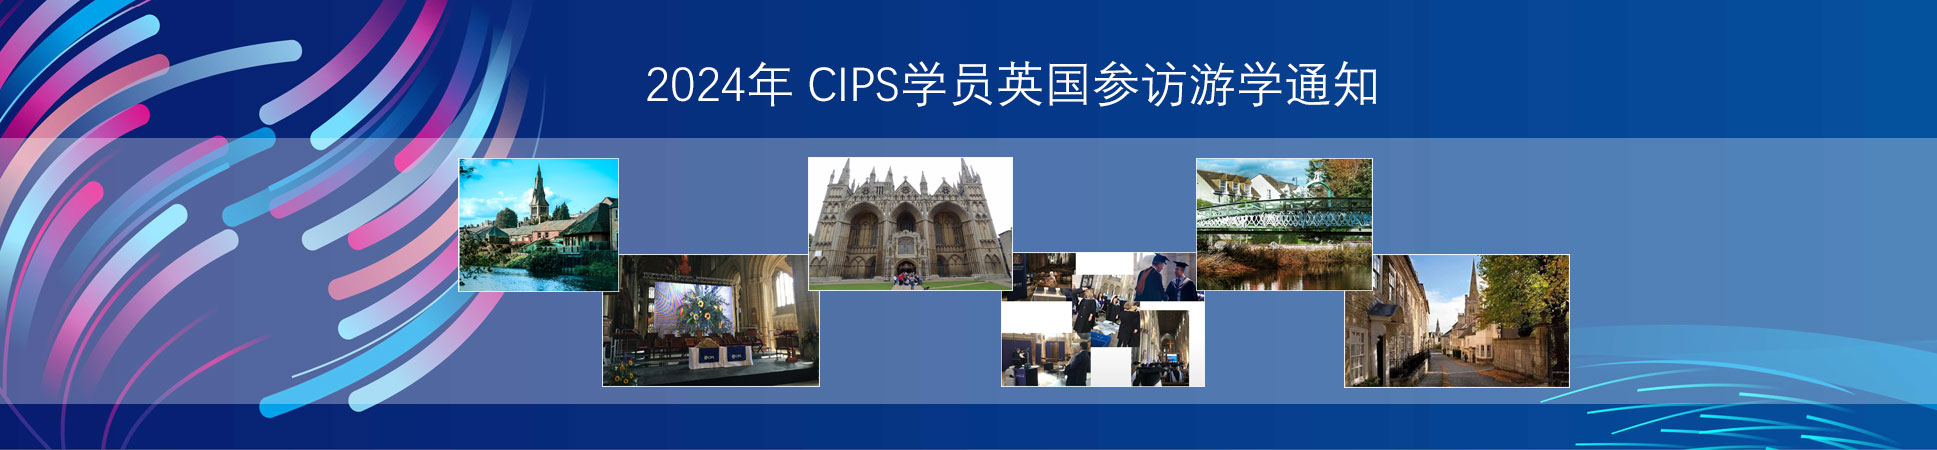 2024年 CIPS学员英国参访游学通知